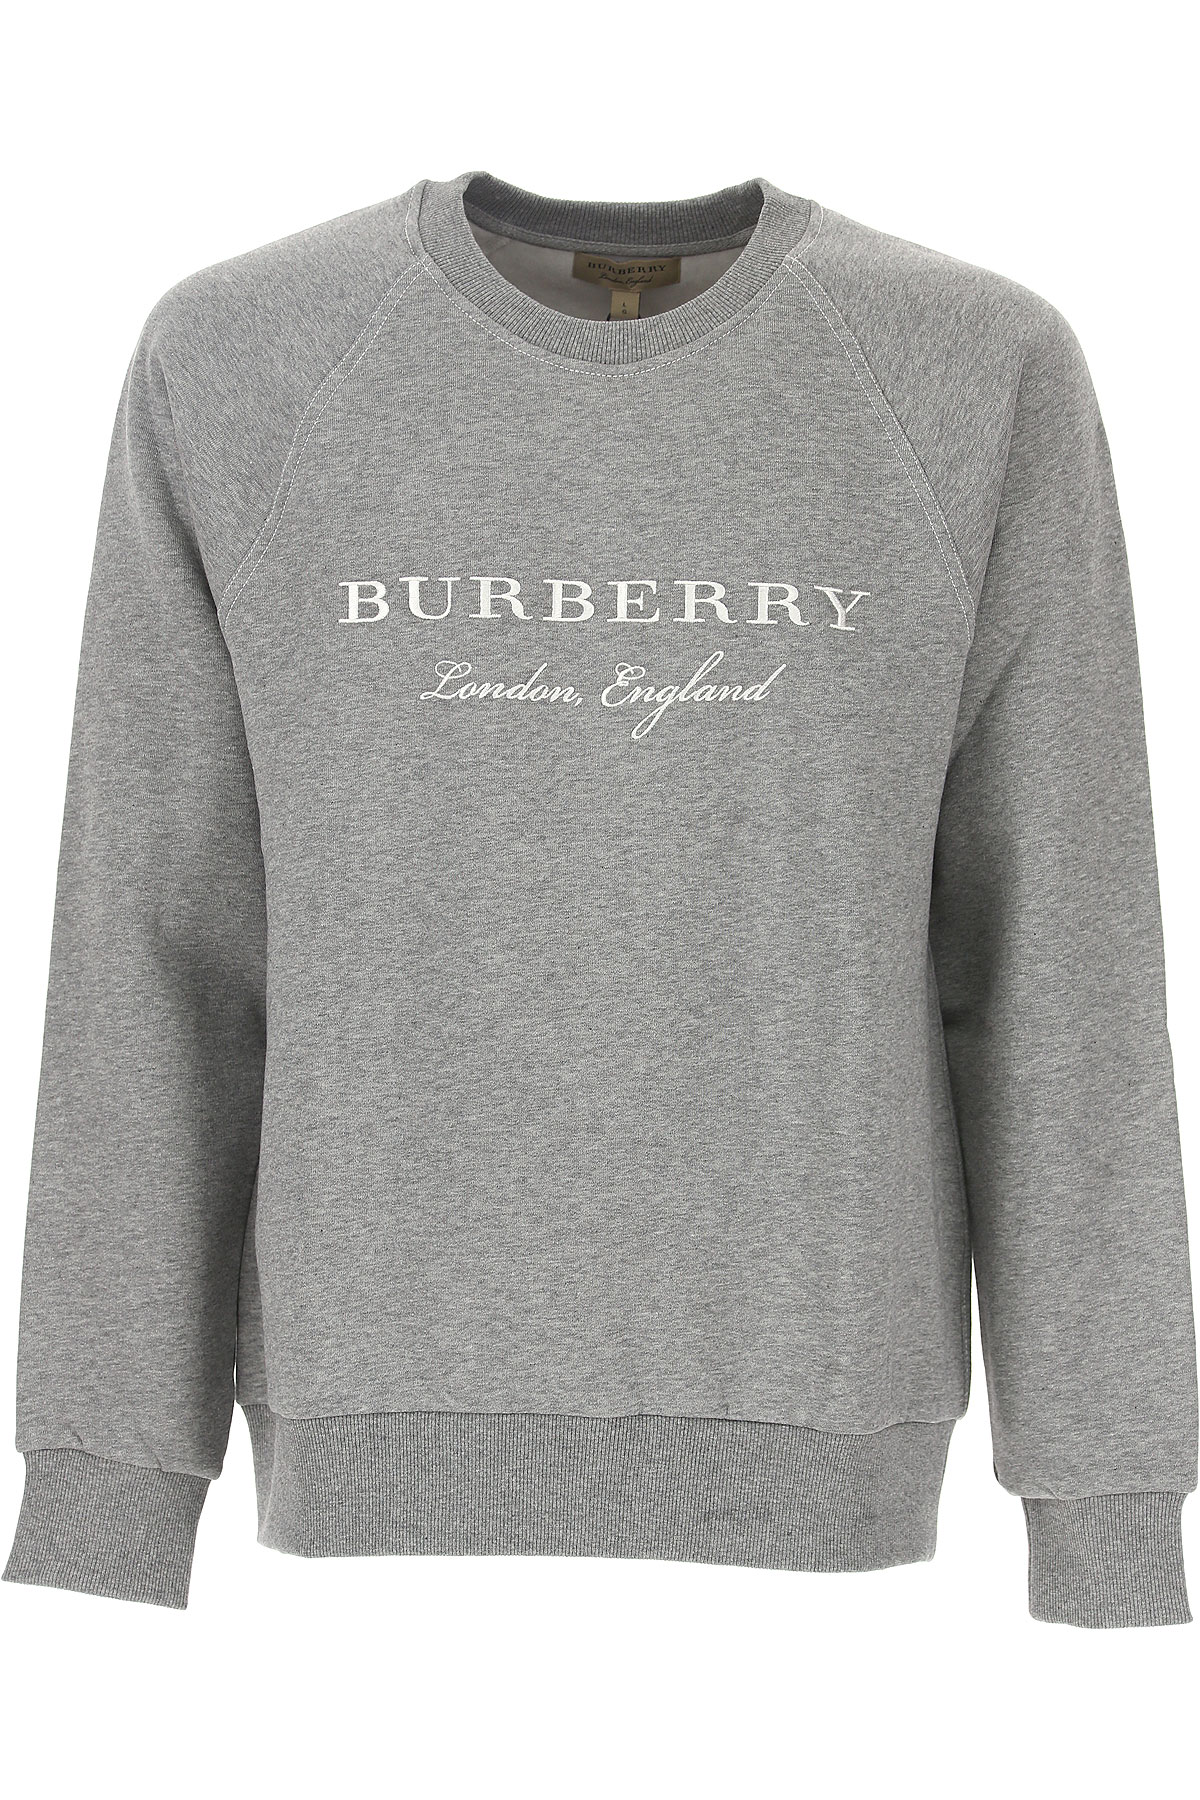 burberry grey crew neck